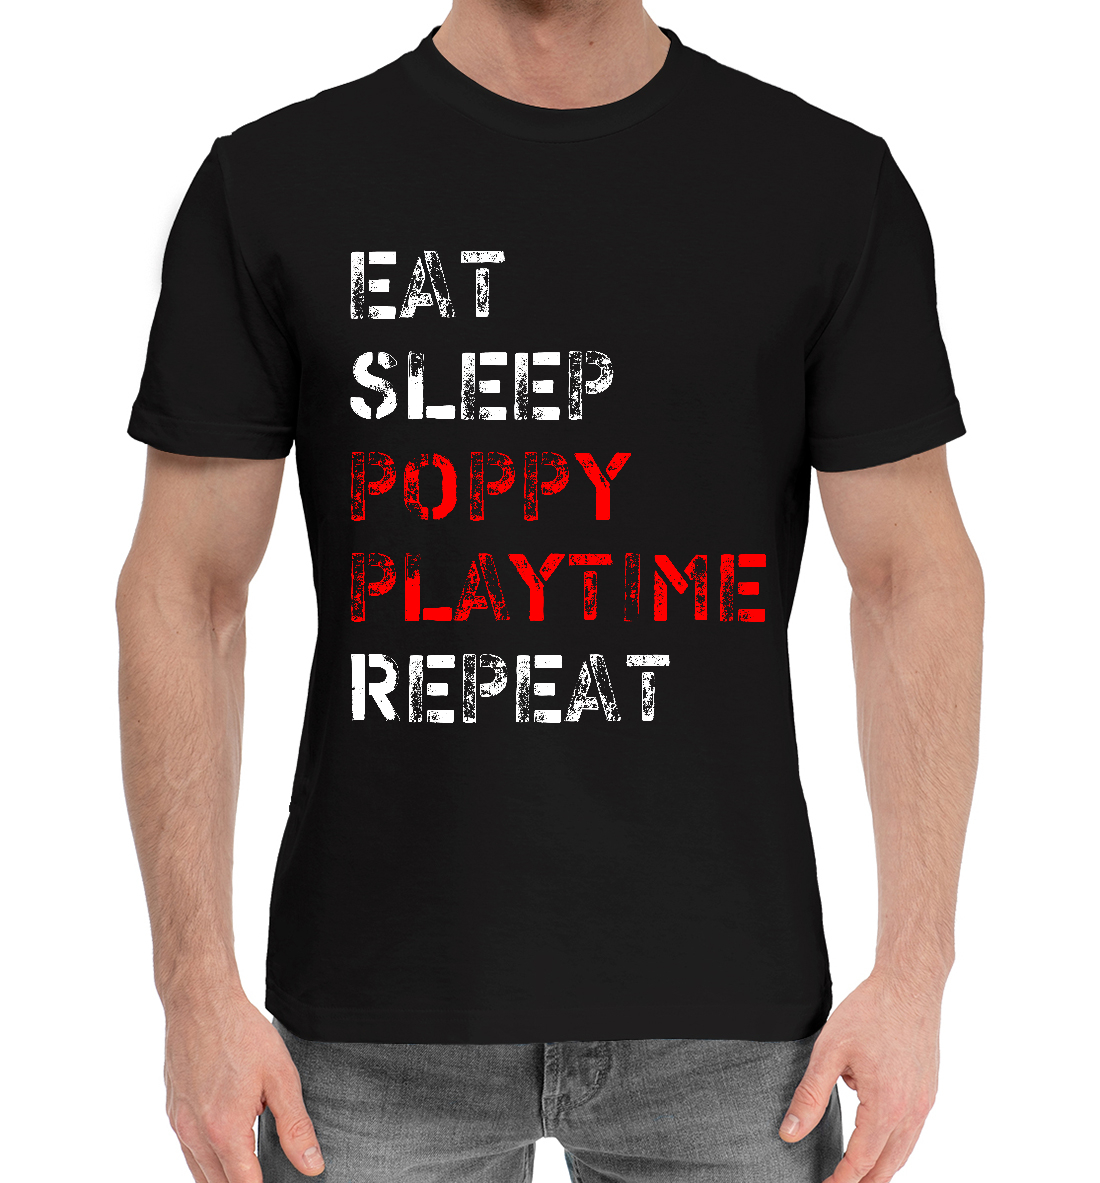 Мужская Хлопковая футболка с принтом Poppy Playtime, артикул PPE-279010-hfu-2mp